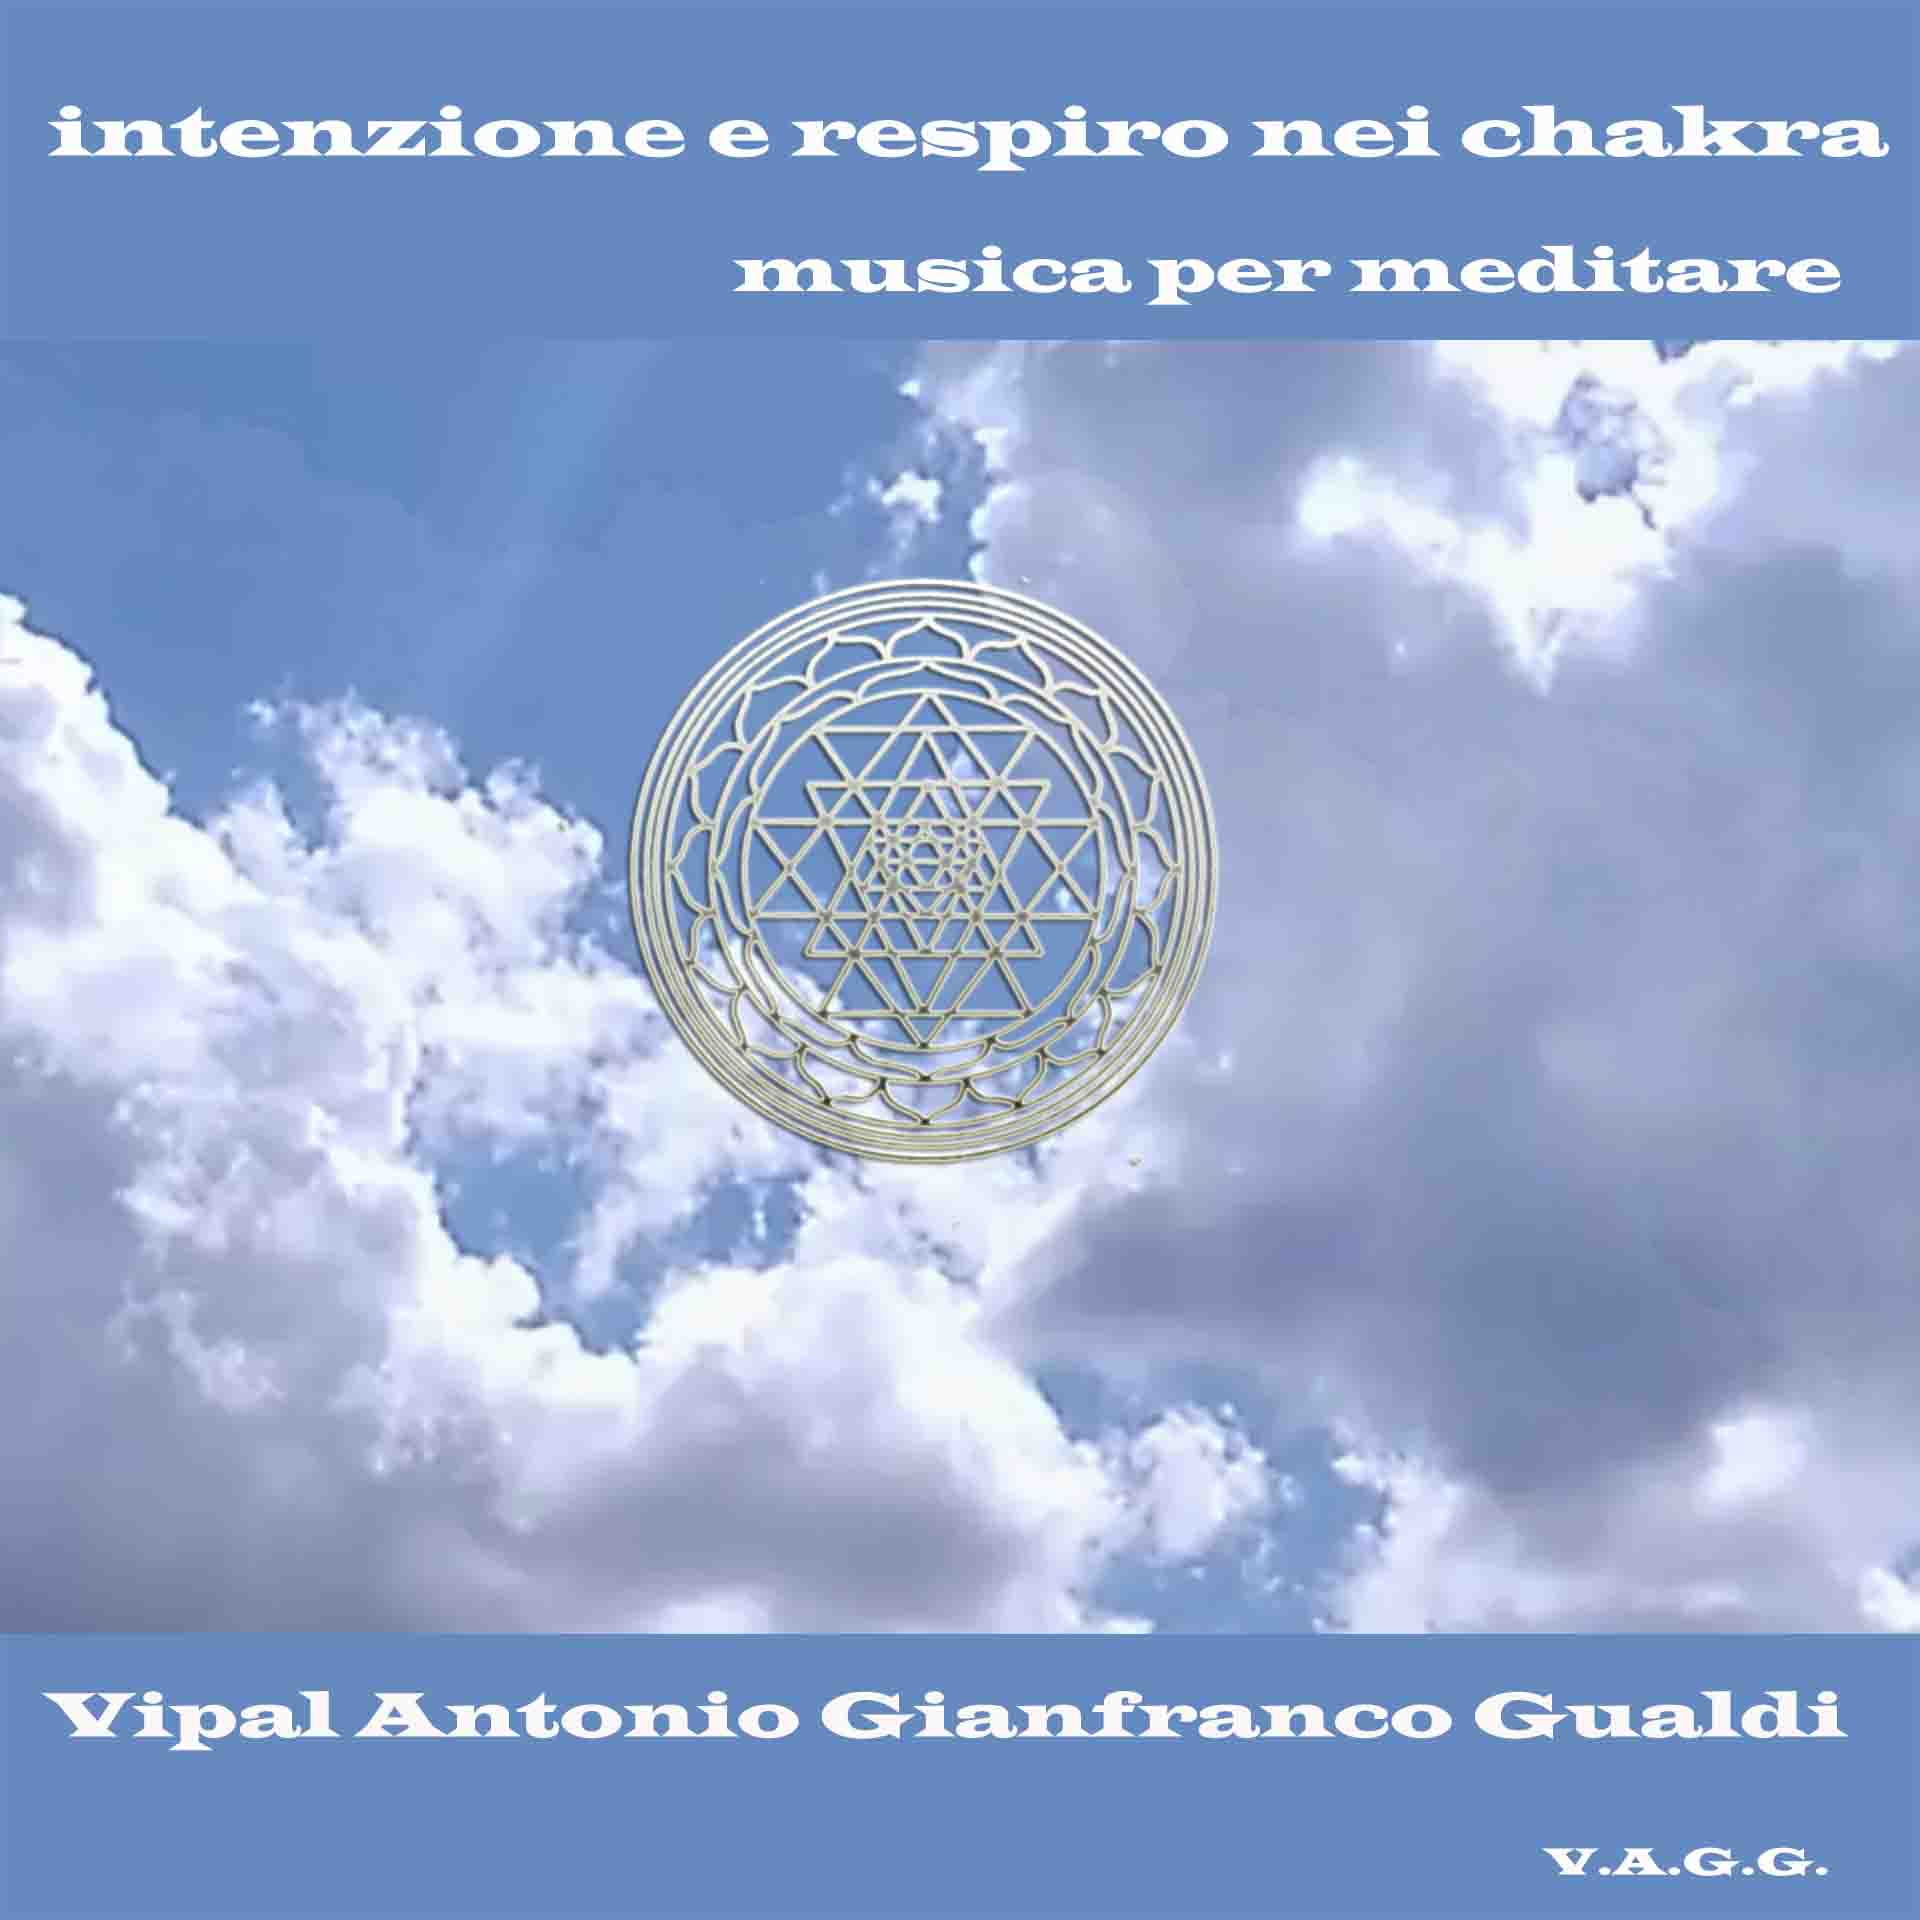 Intenzione e respiro nei chakra musiva da meditazione Vipal Antonio Gianfranco Gualdi